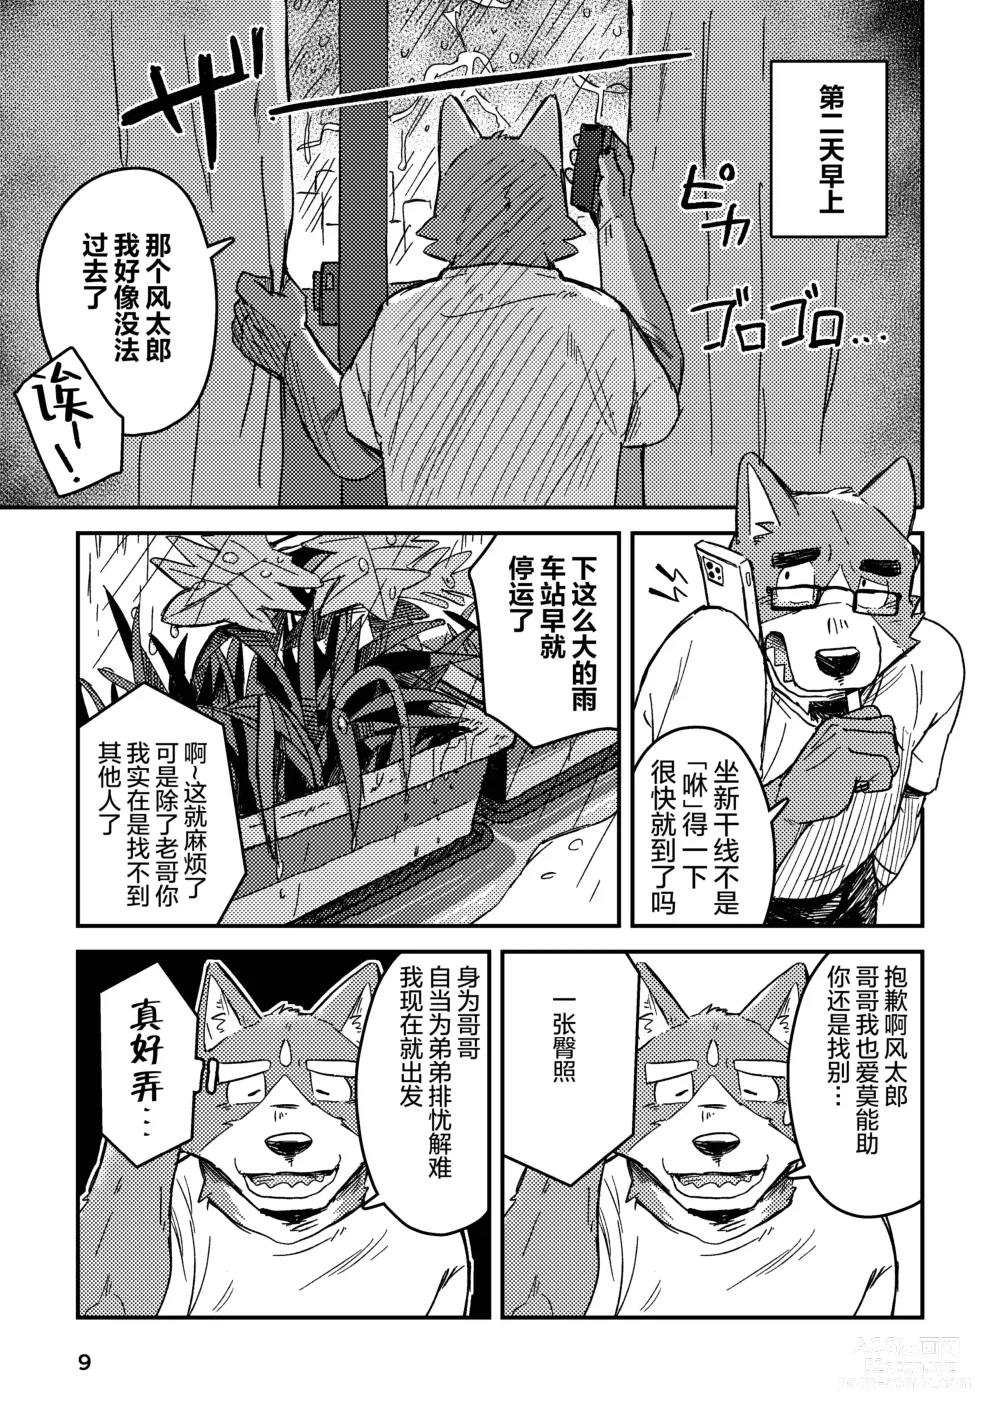 Page 9 of doujinshi 约定的龙穴